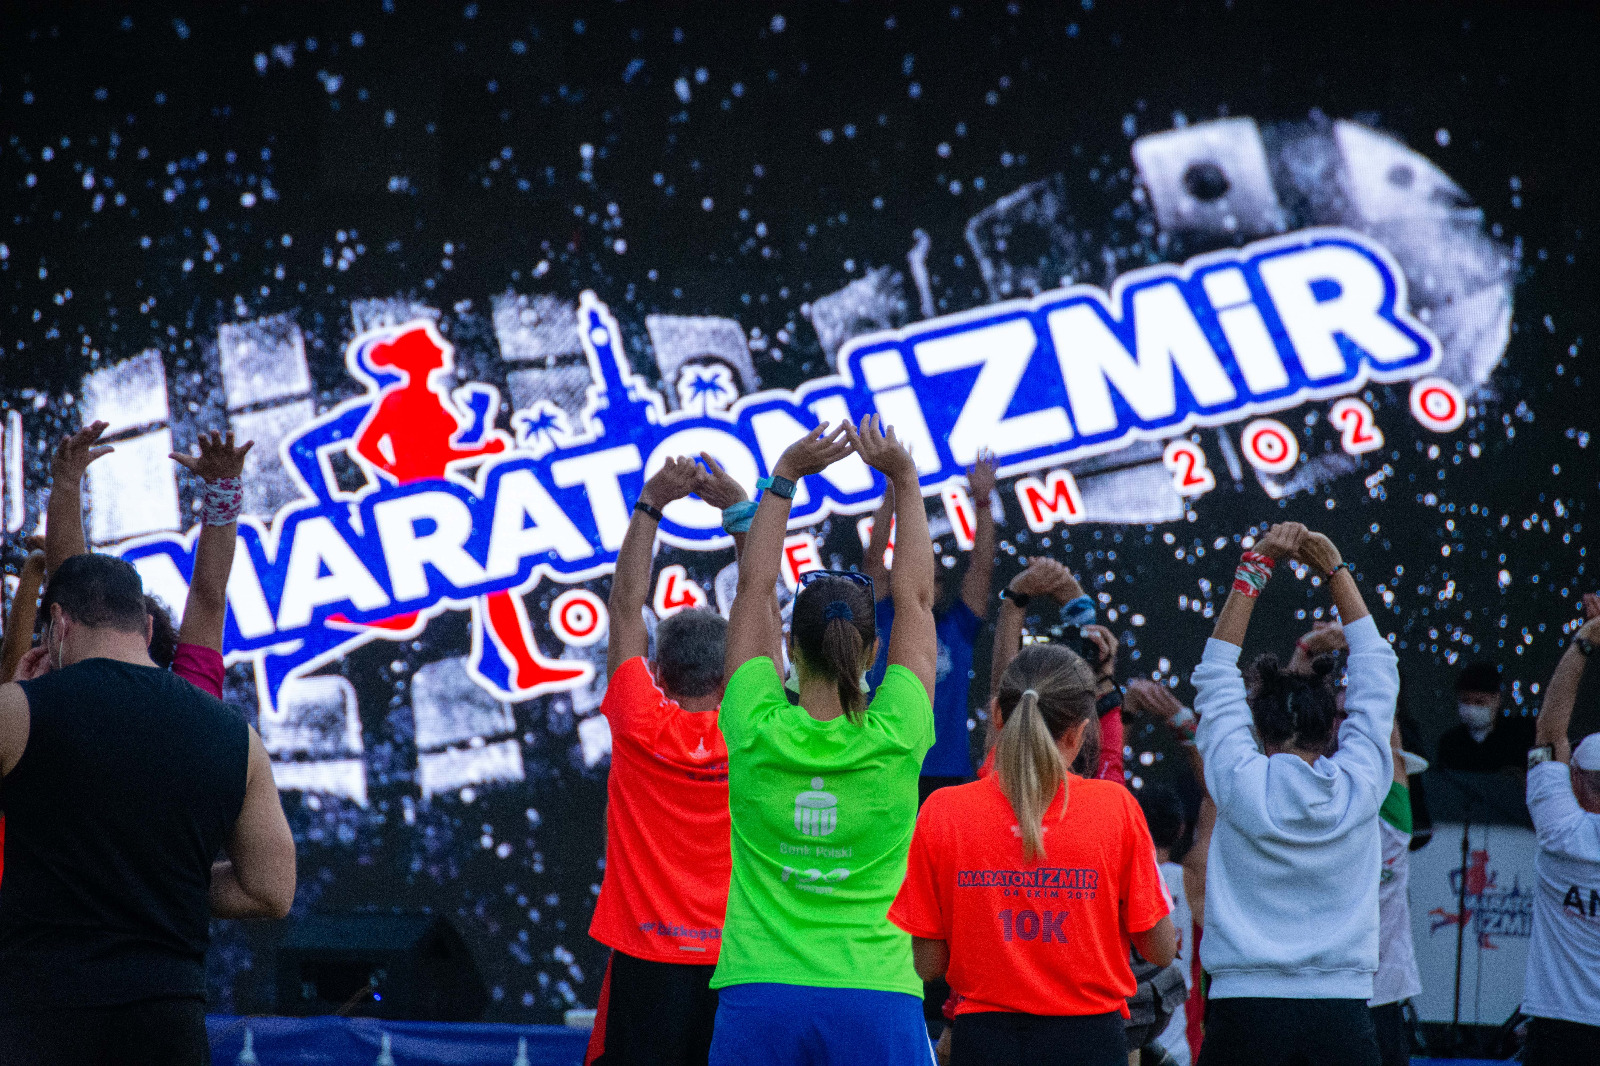 Maraton İzmir 1. Fotoğraf Yarışması’nda kazananlar belli oldu!